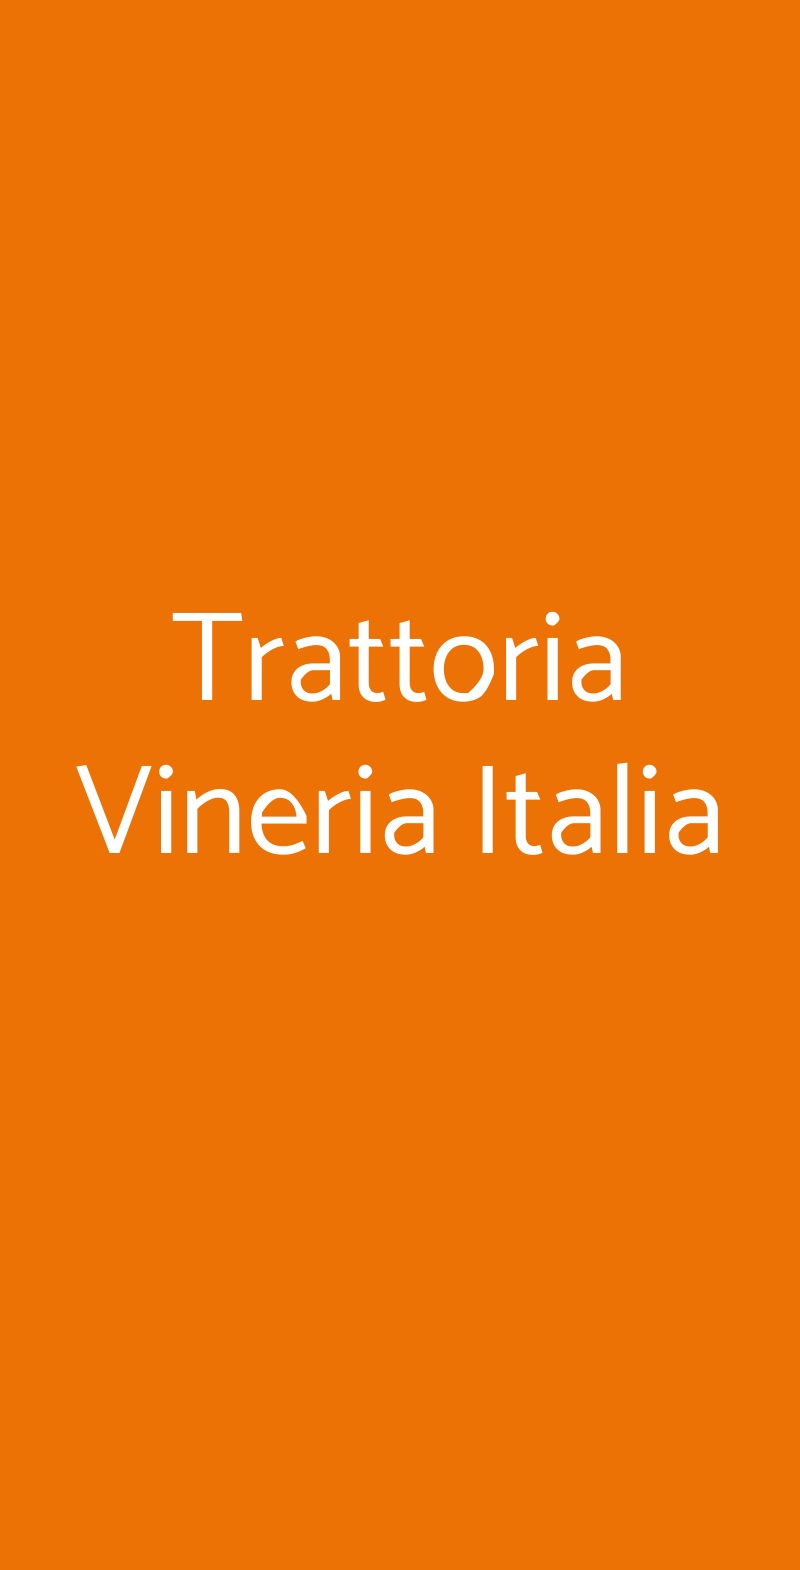 Trattoria Vineria Italia Villarbasse menù 1 pagina